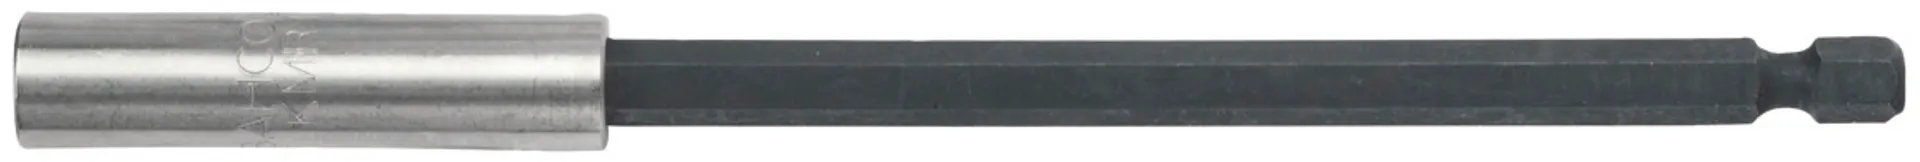 Bahco ruuvauskärkipidin 1/4" 150mm magneetilla - 1